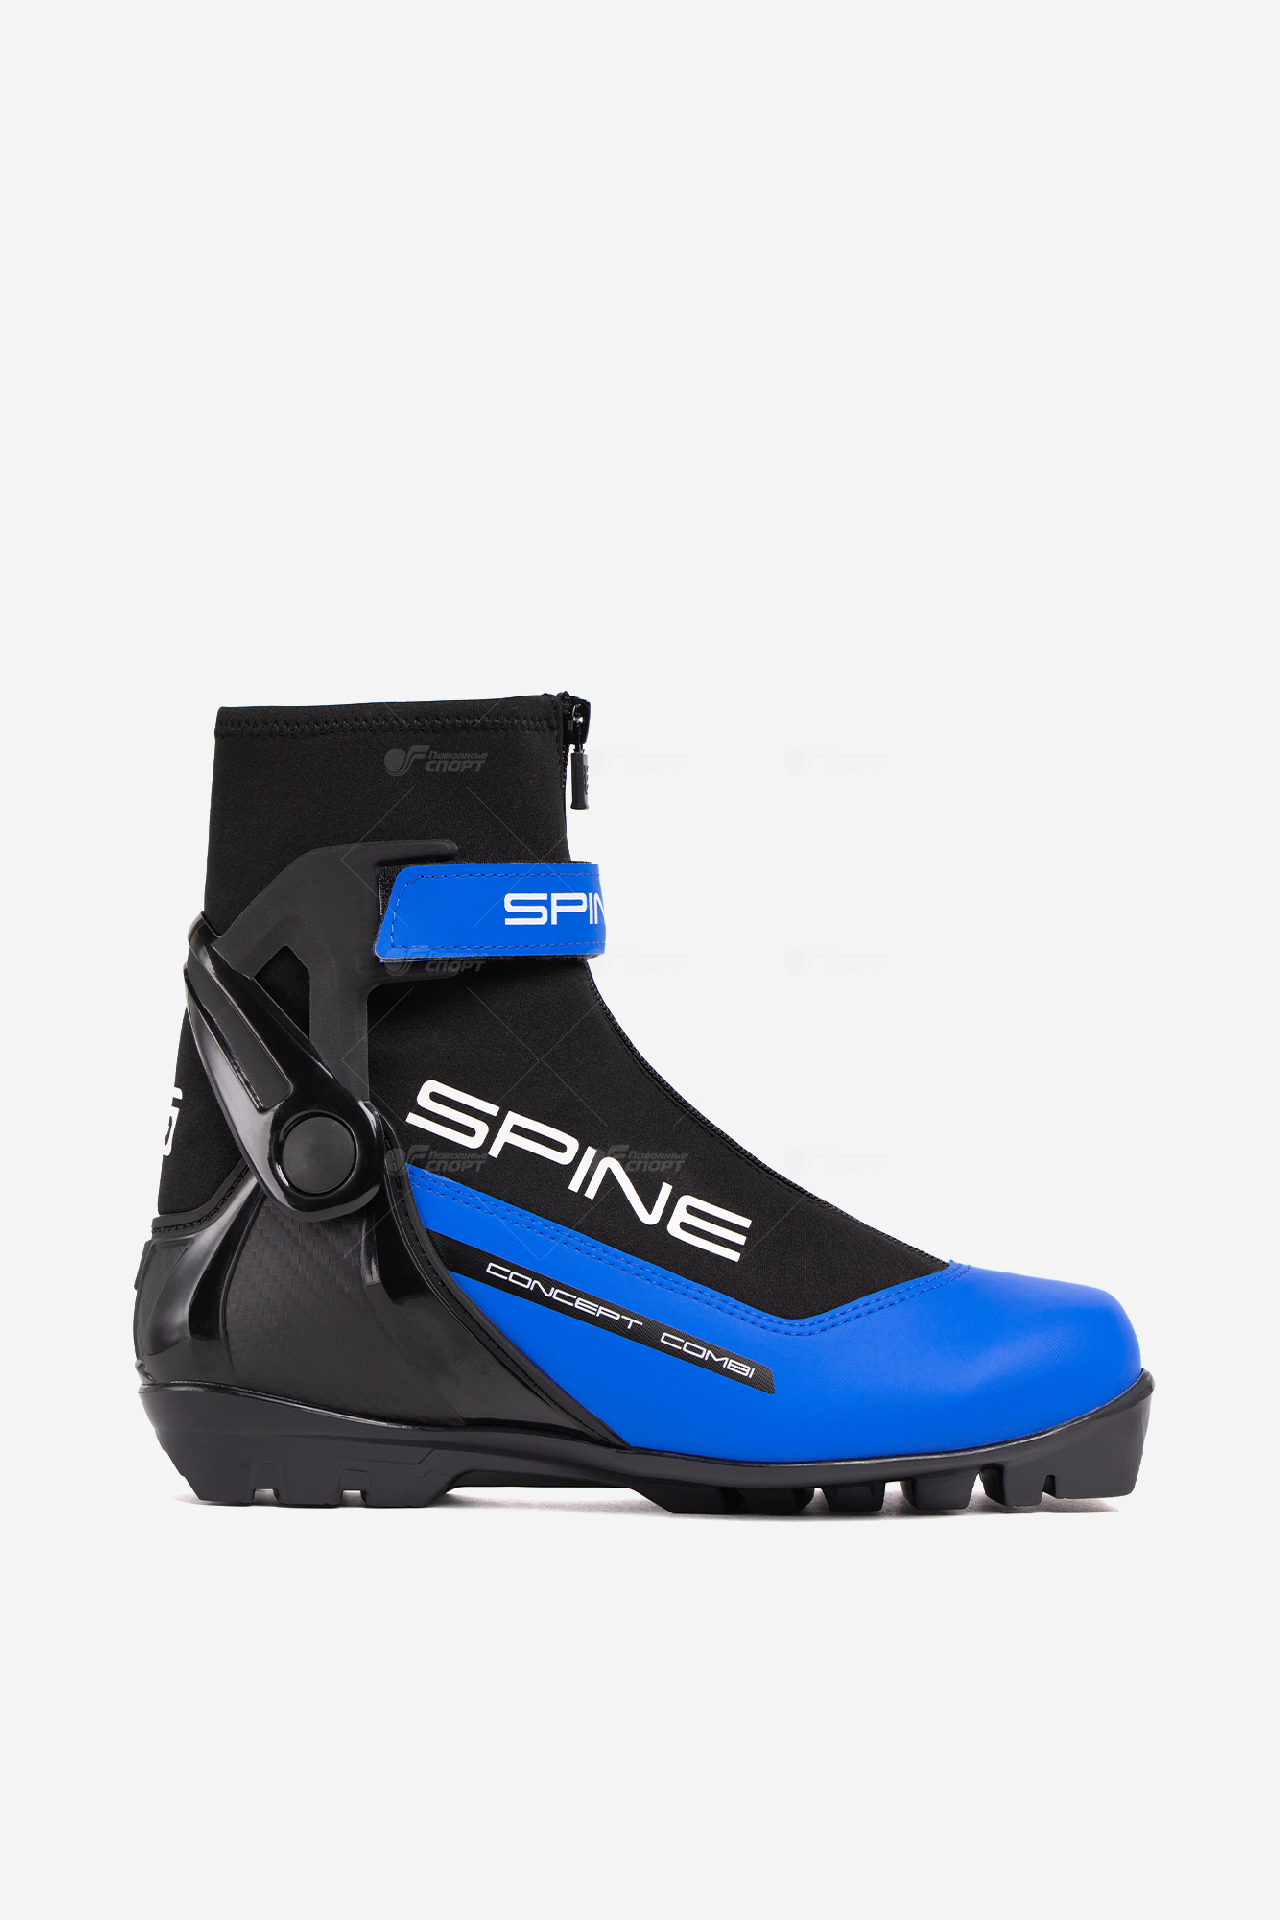 Ботинки лыжн. Spine Concept Combi SNS арт.468/1-22 р.37-47